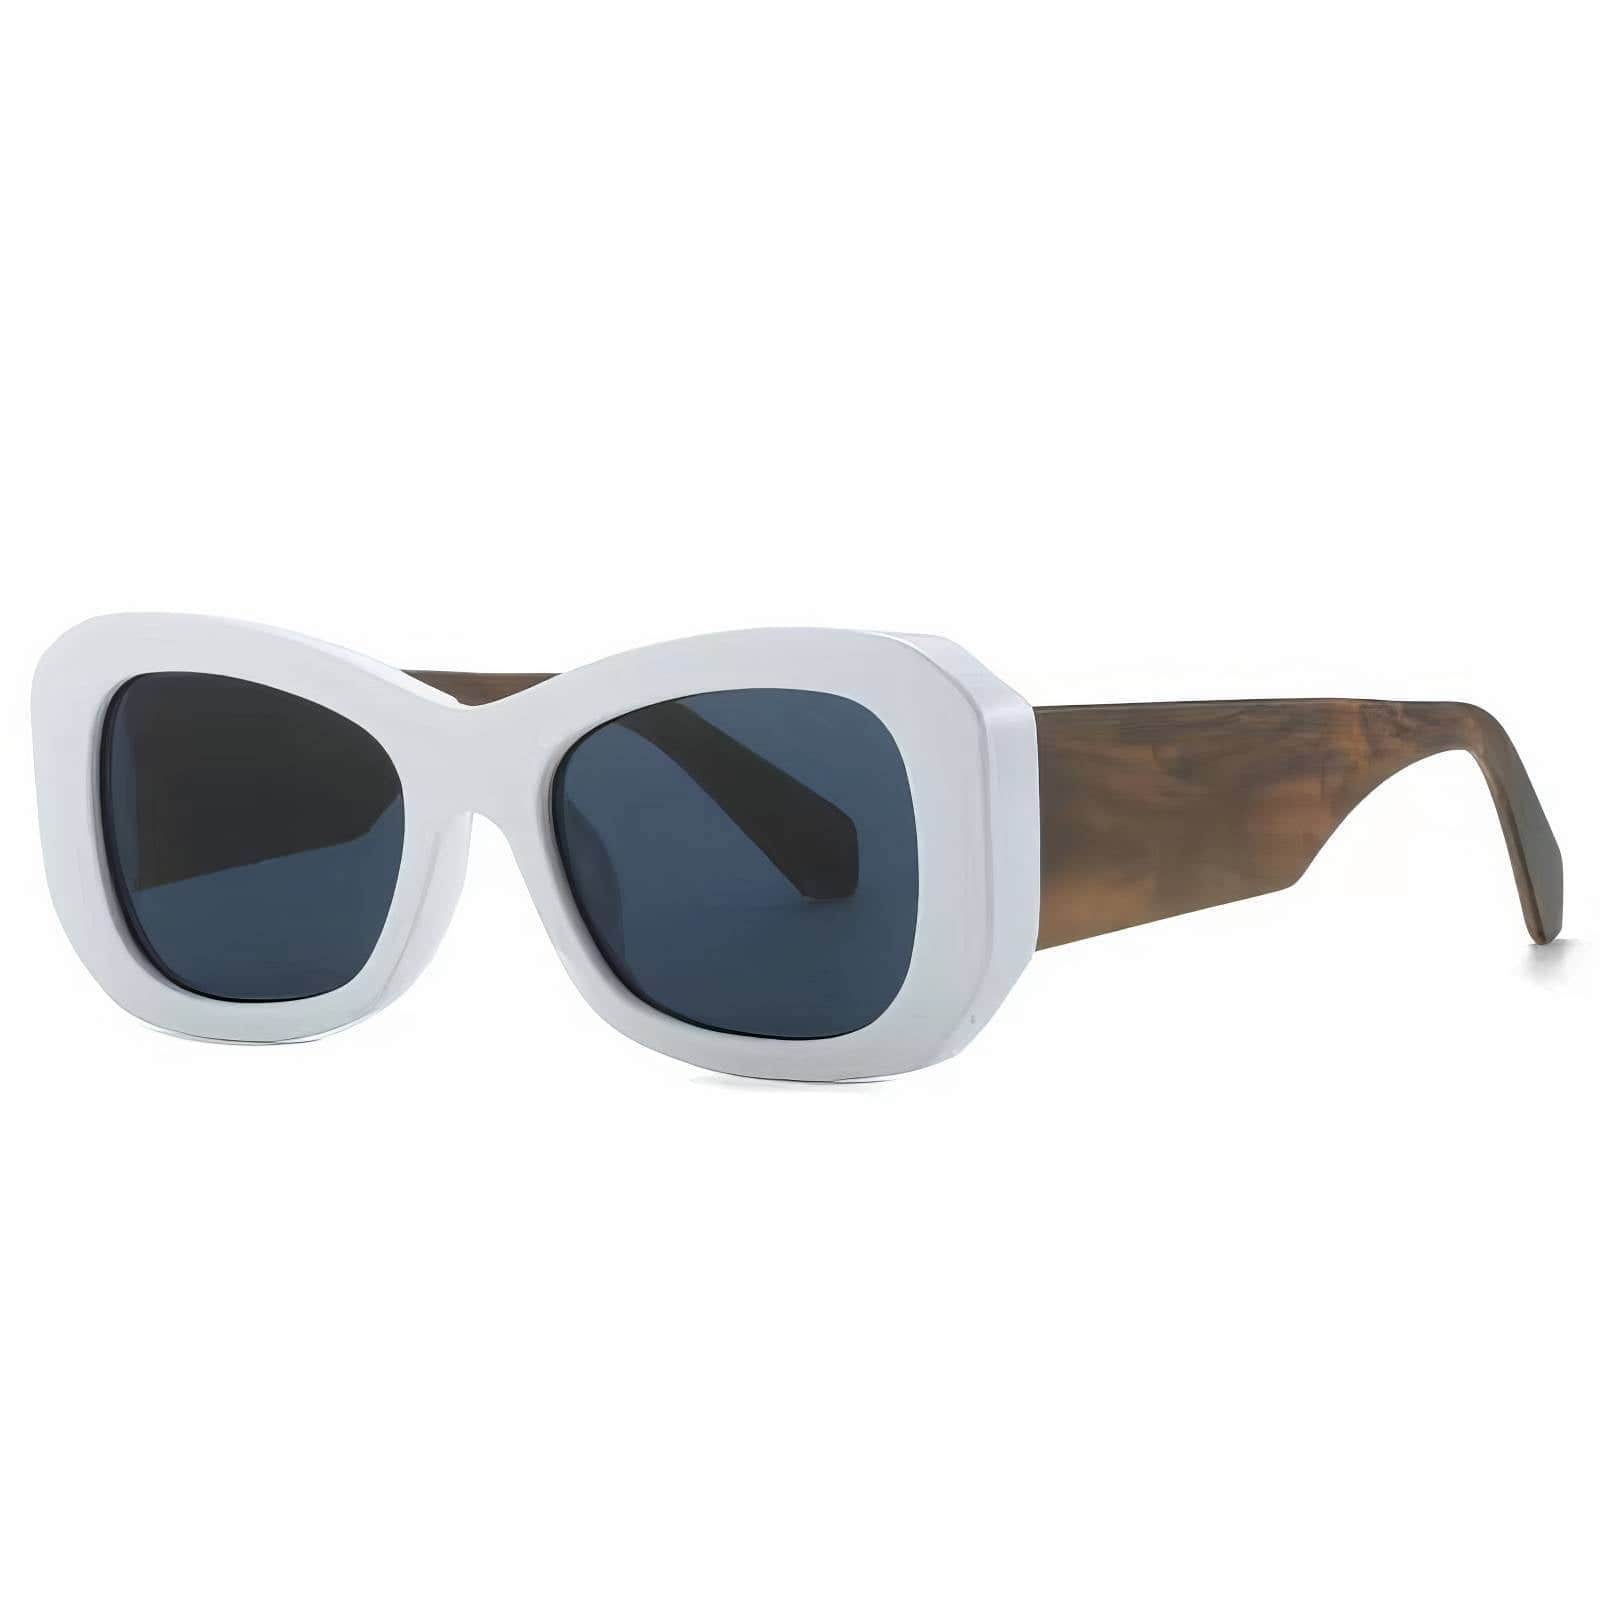 Funky Trending Square Sunglasses White/Gray / Resin